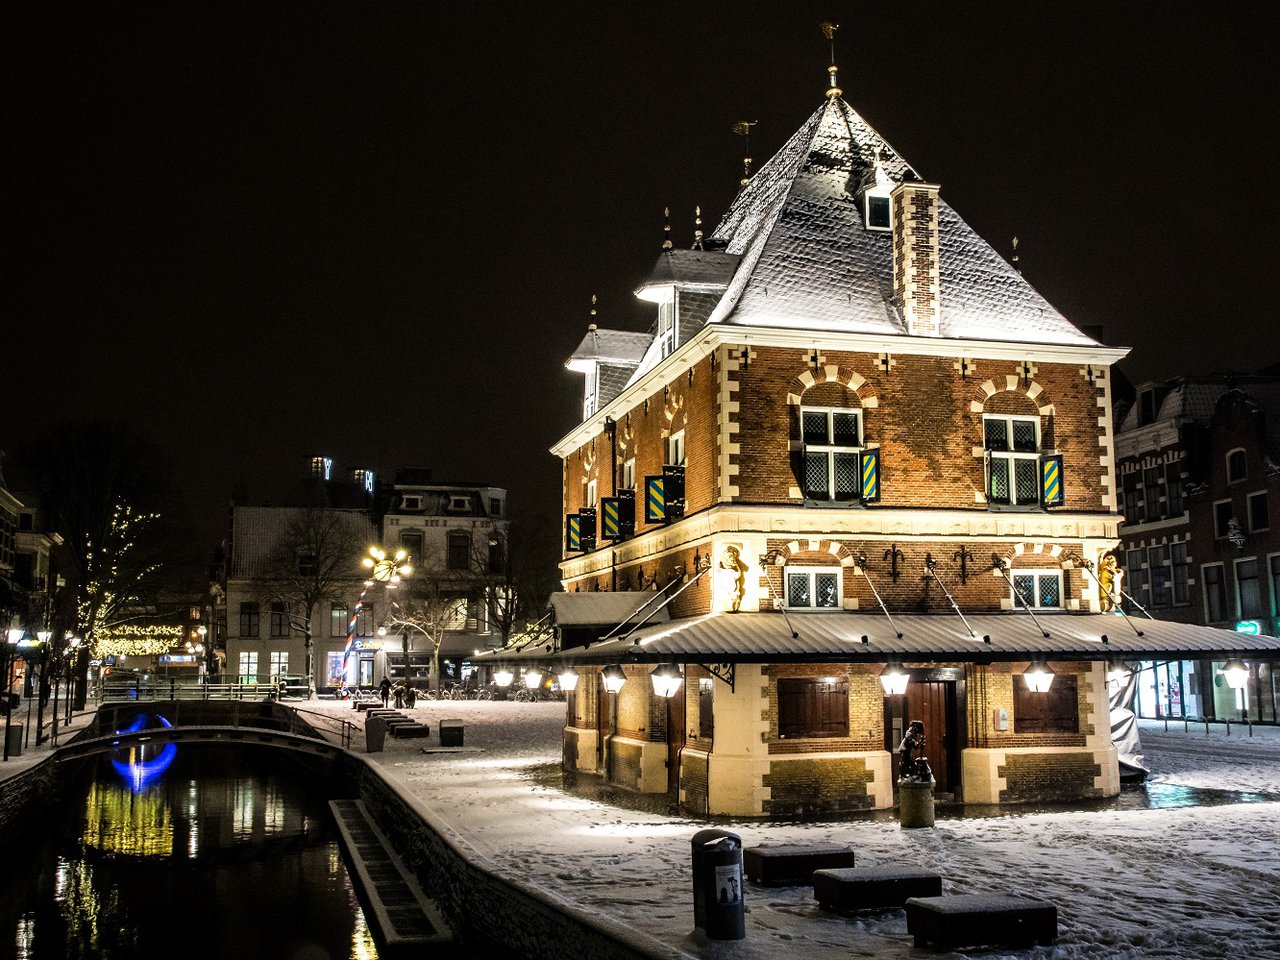 Leeuwarden-winter-image-1.jpg